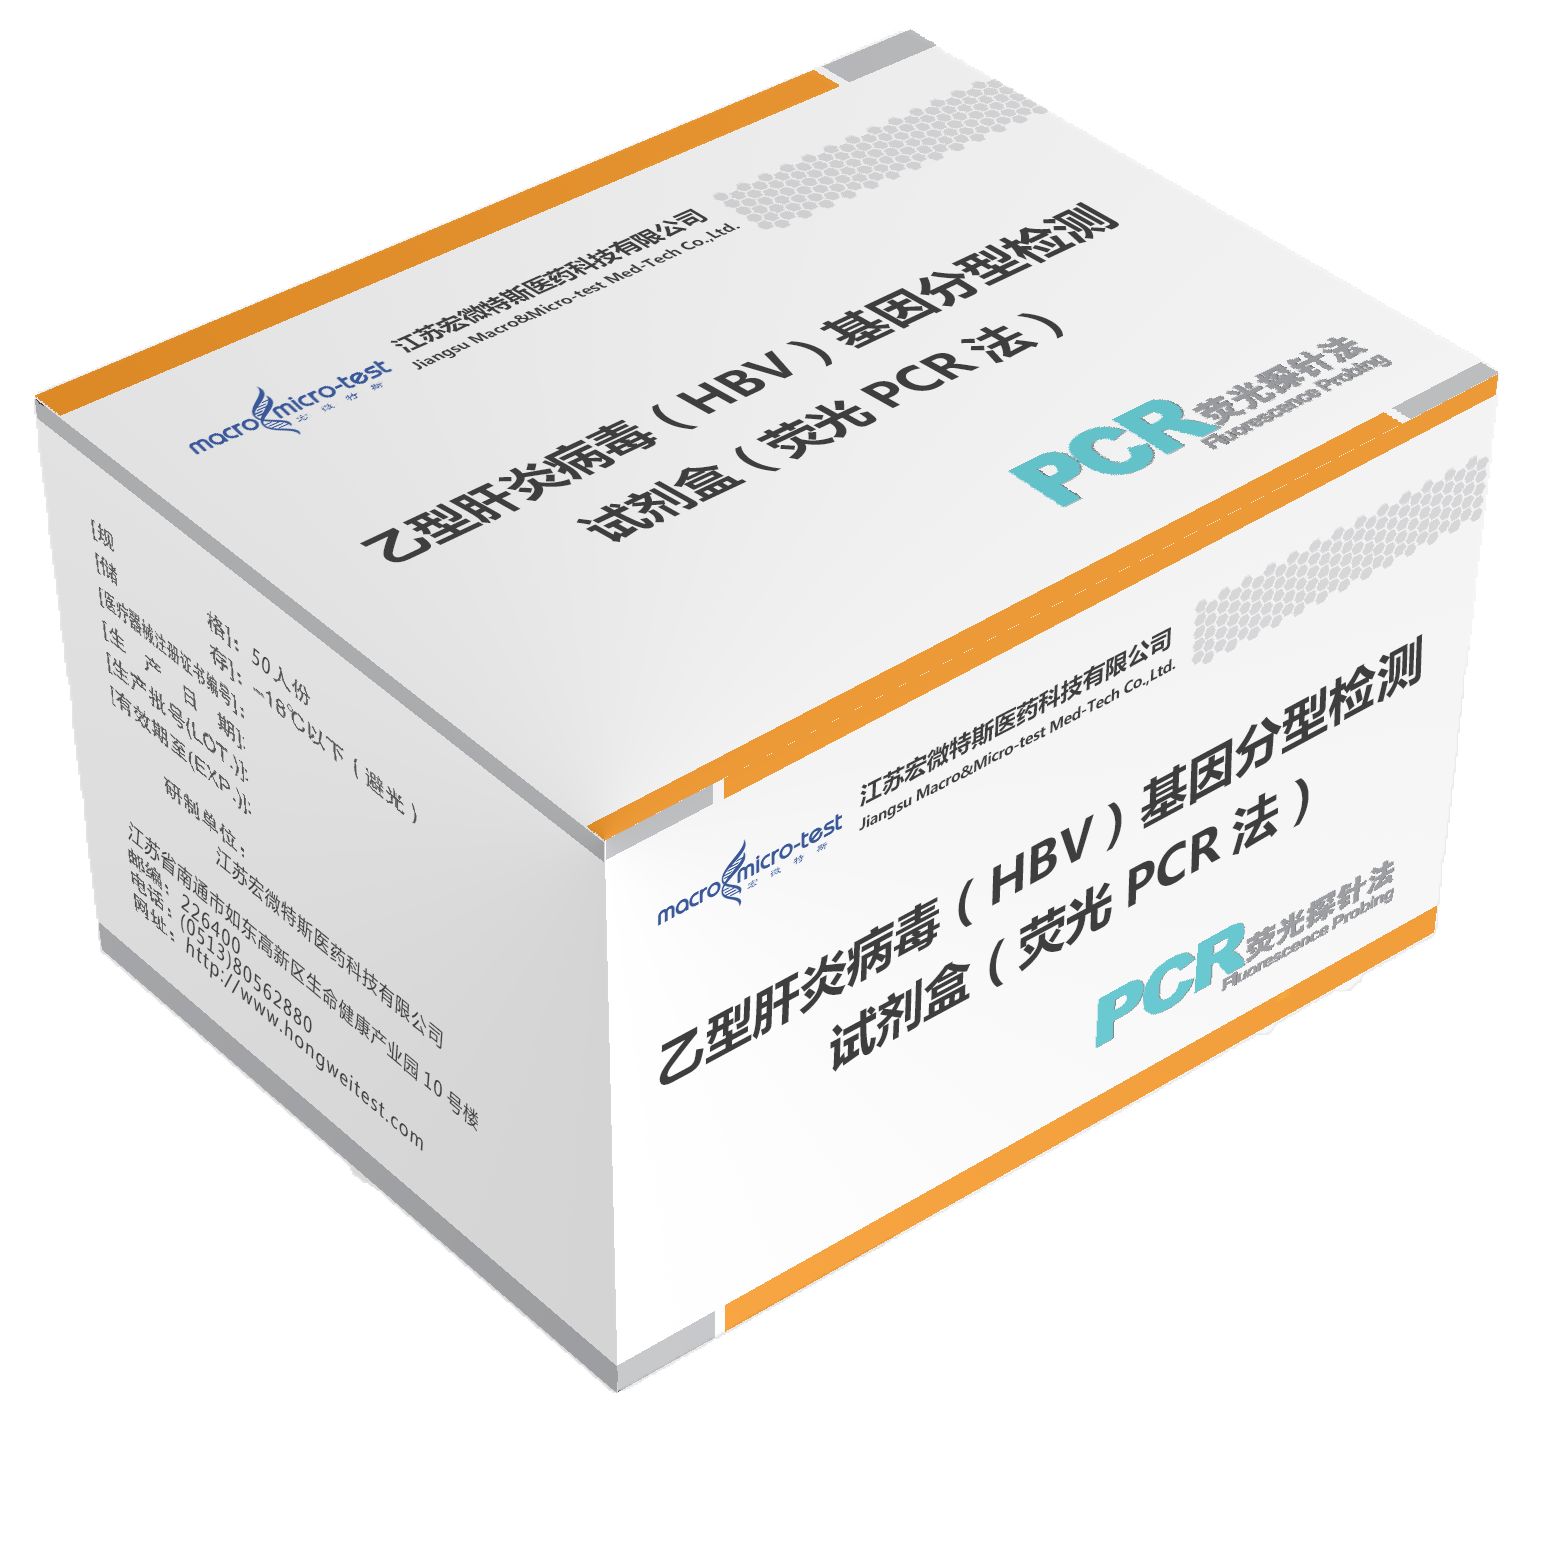 乙型肝炎病毒（HBV）基因分型检测试剂盒（荧光PCR法）